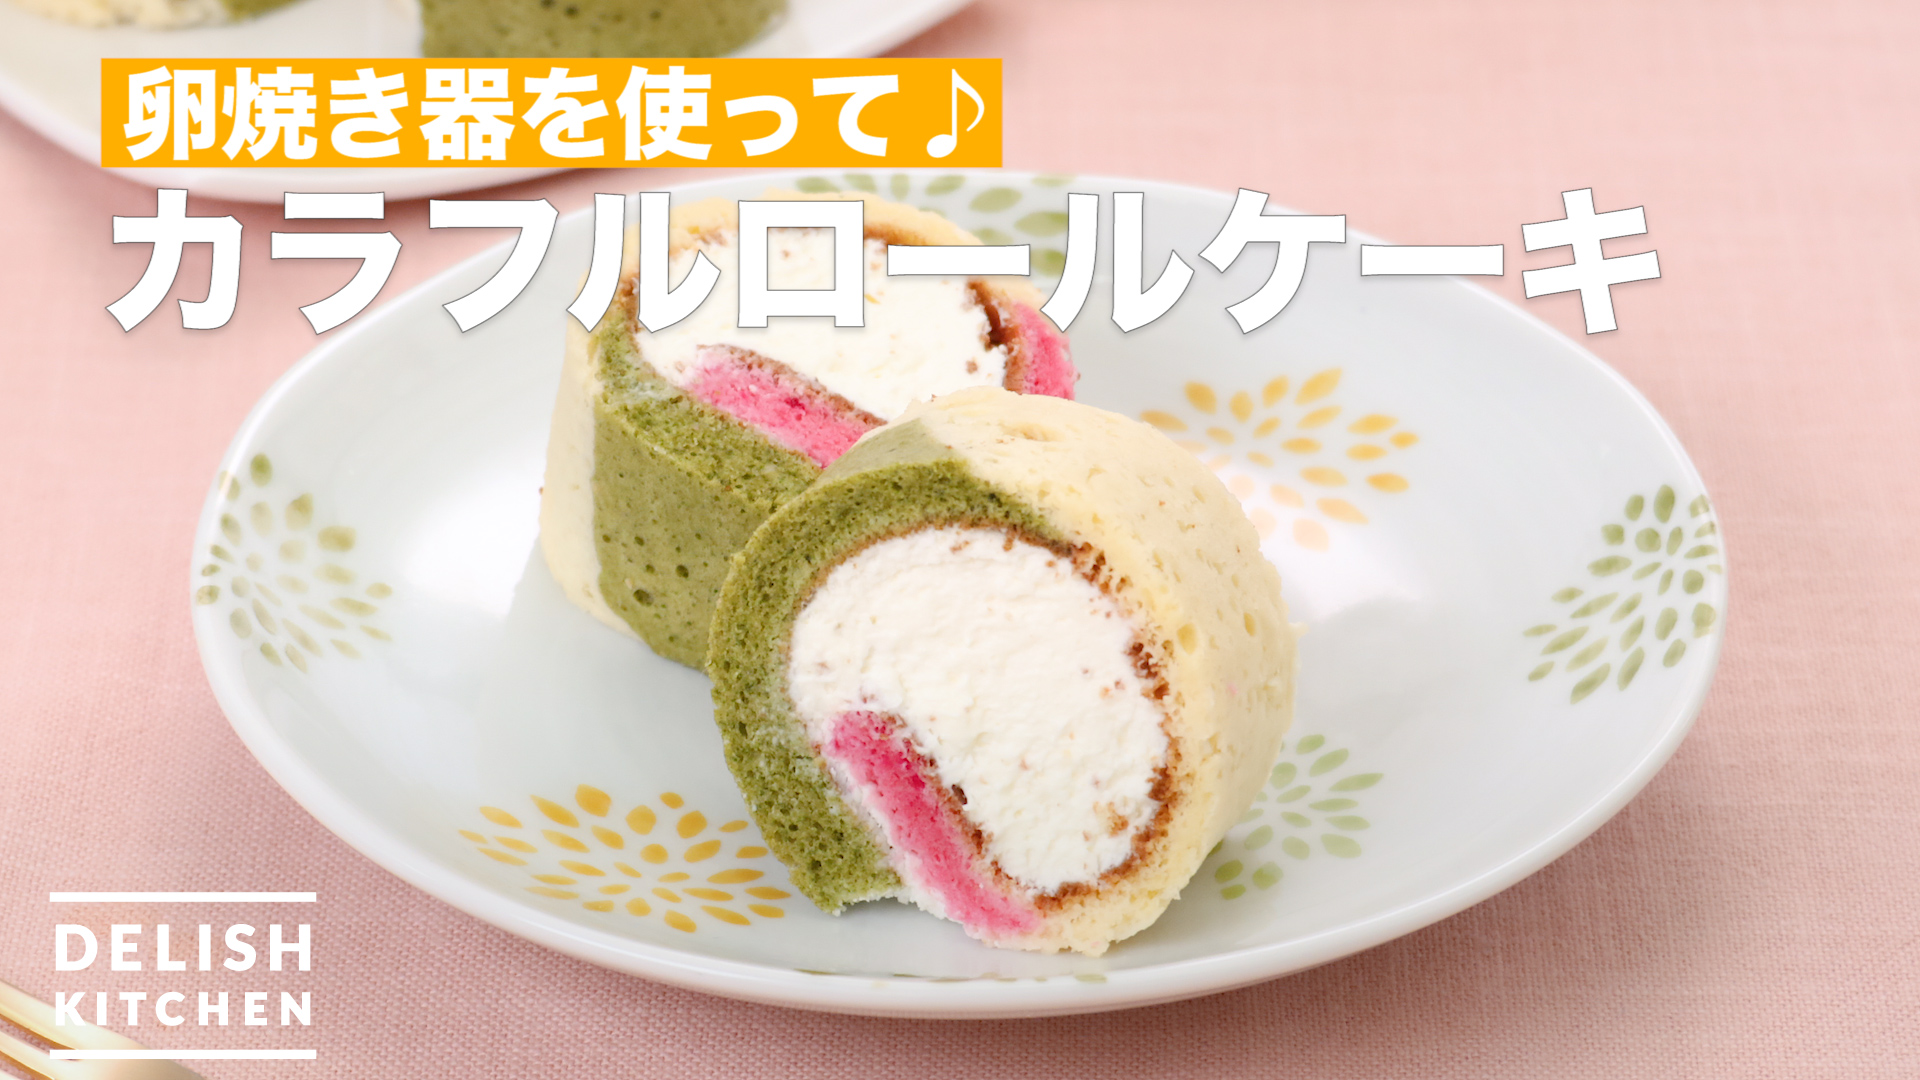 卵焼き器を使って カラフルロールケーキ How To Make Colorful Roll Cake Delish Kitchen デリッシュキッチン Yahoo Japan